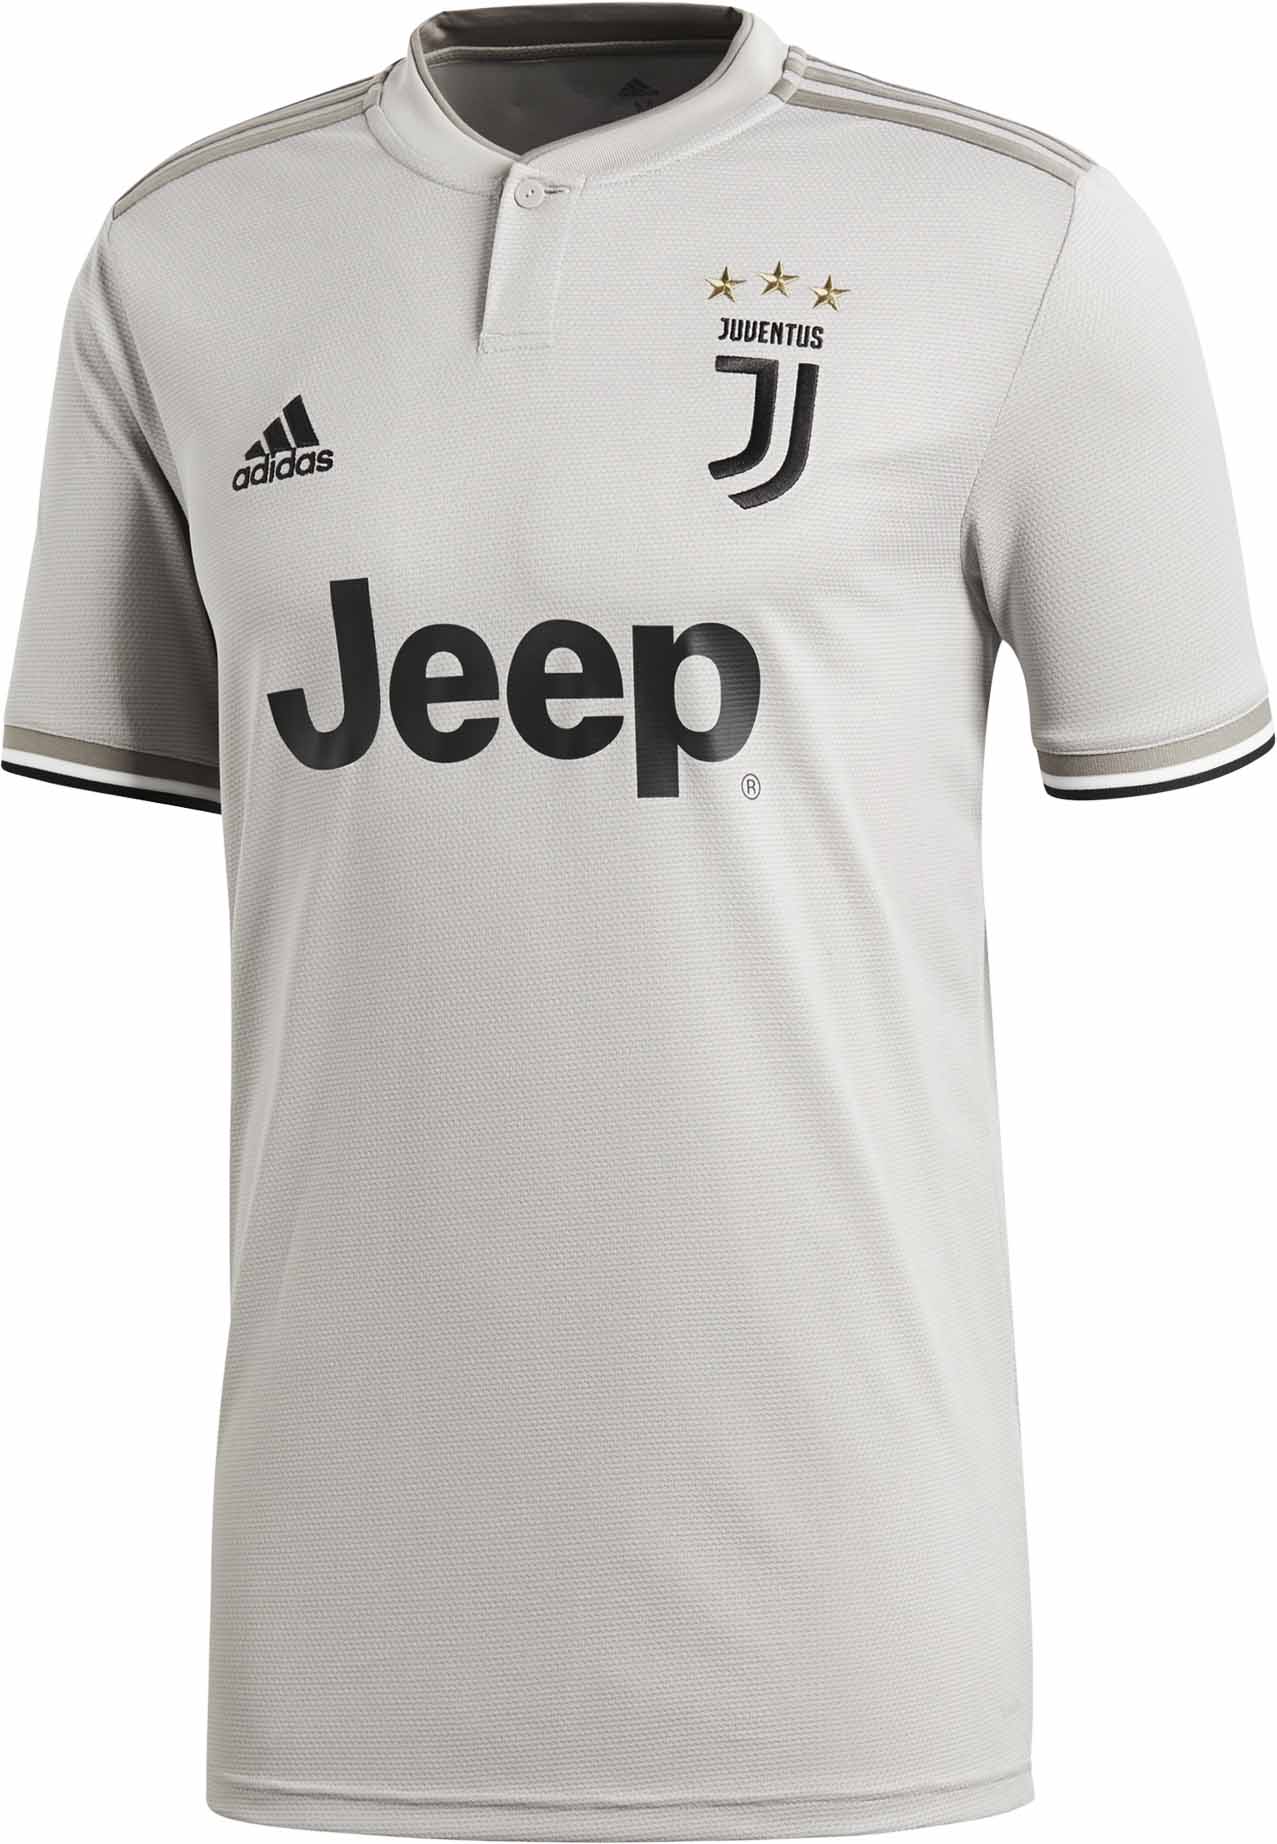 adidas Juventus Away Jersey - Youth 